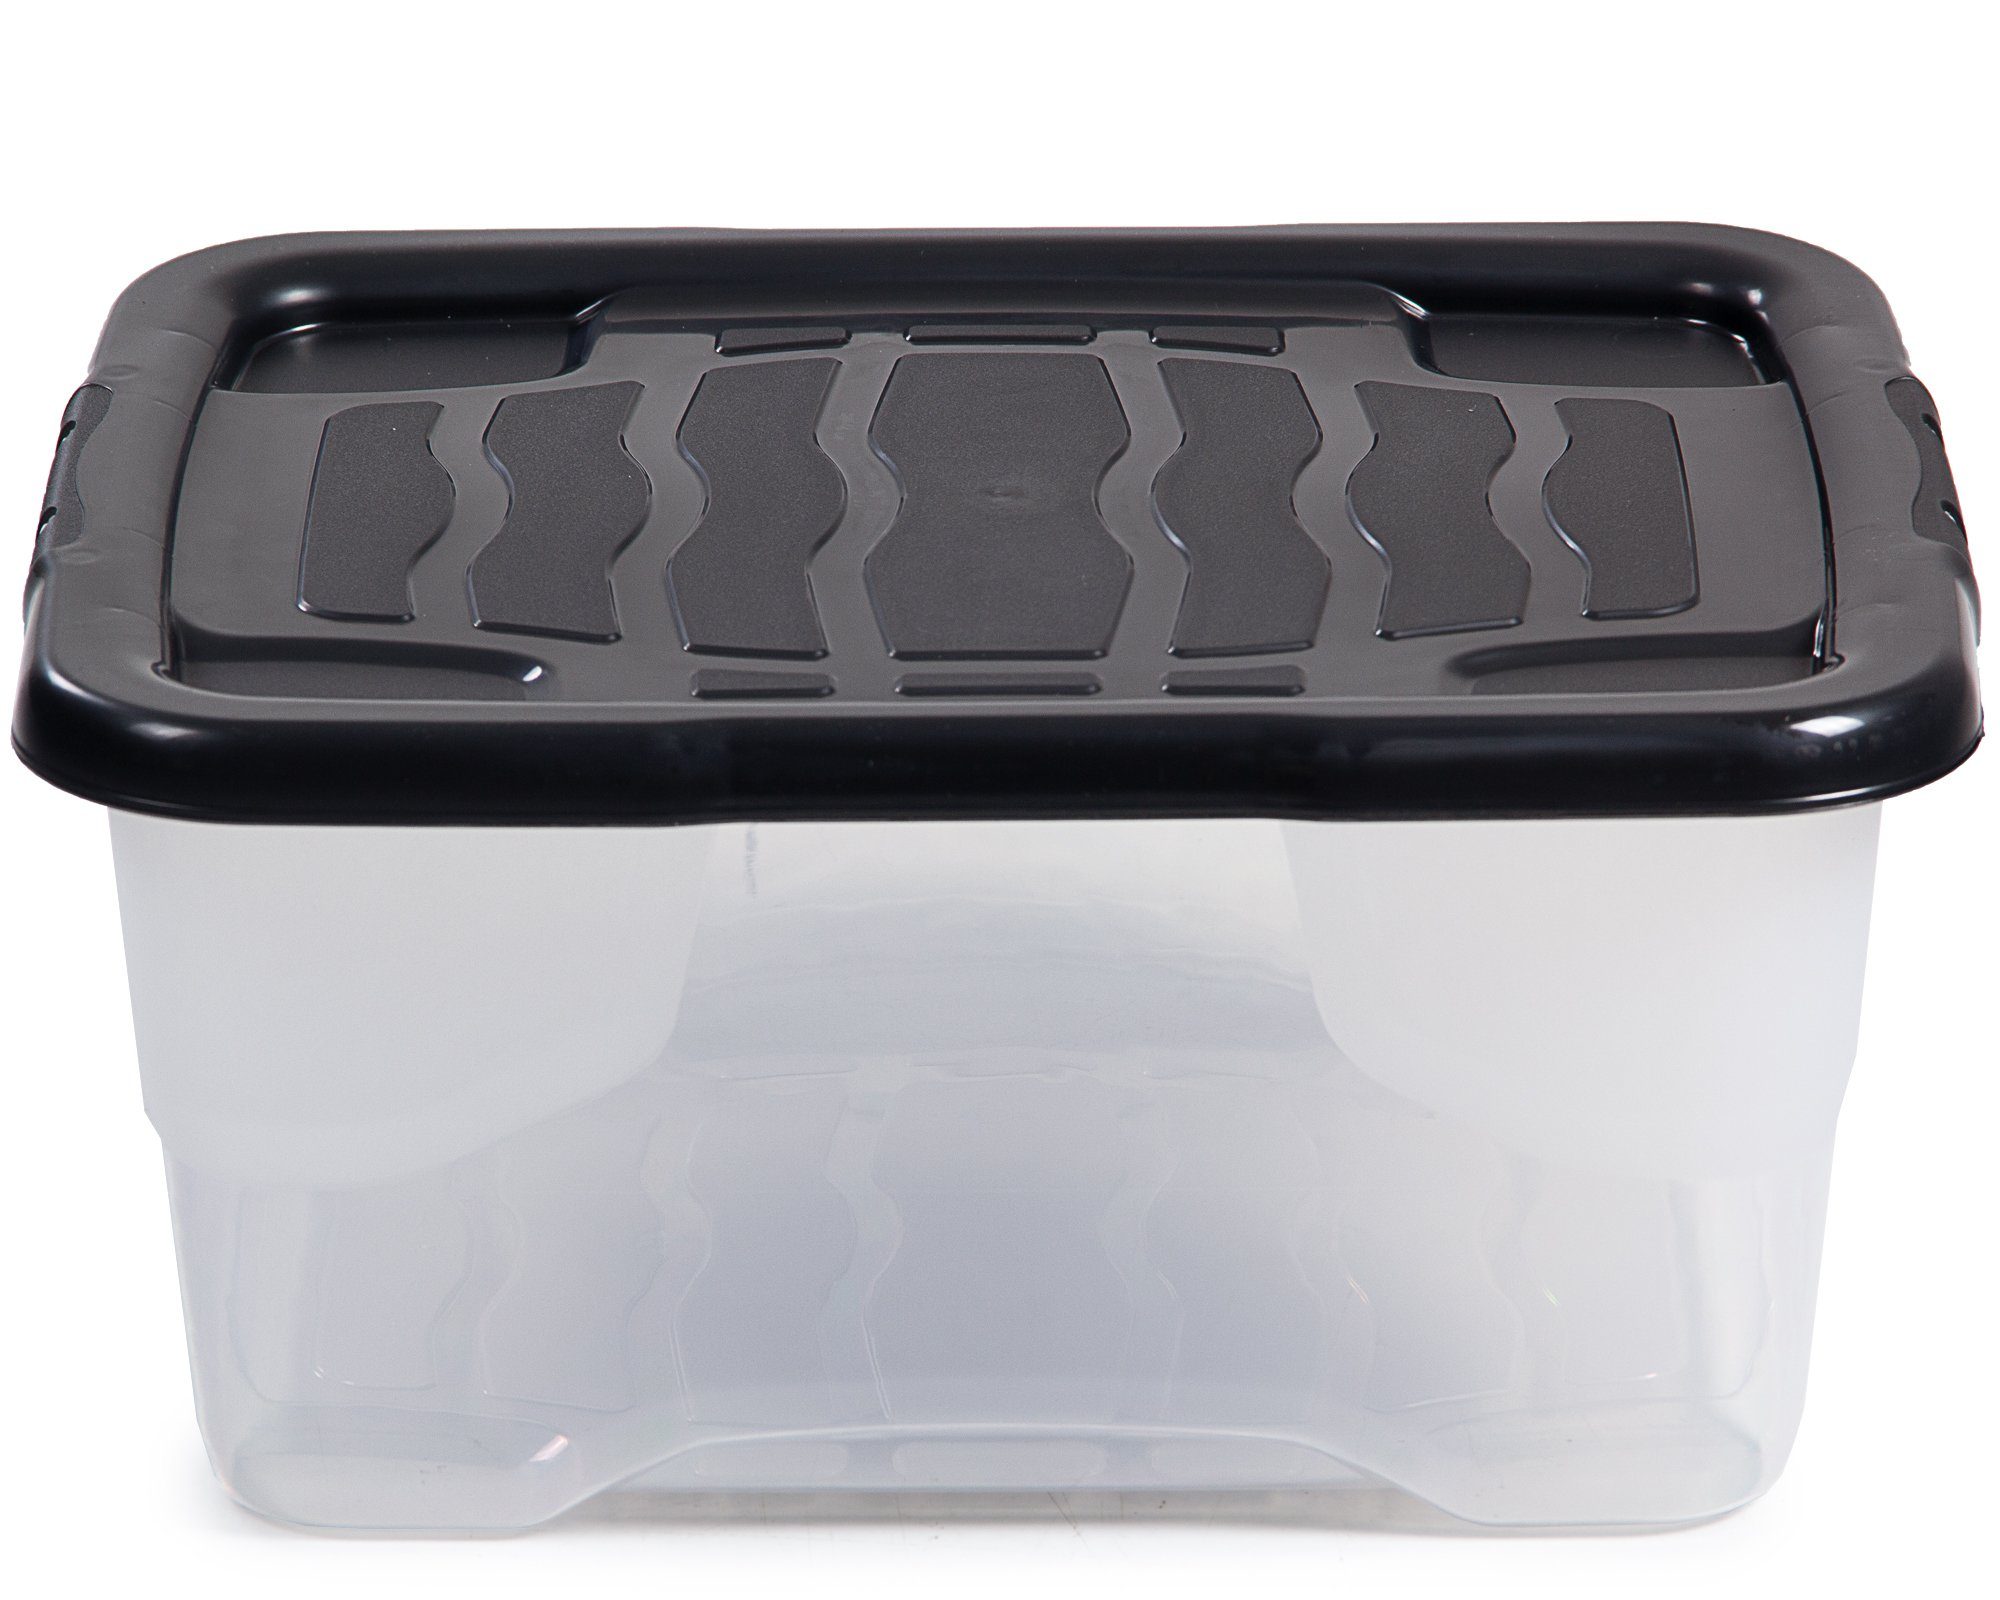 Orplast Aufbewahrungsbox Lagerbox Box Behälter transparent 60L mit Deckel 2731B 